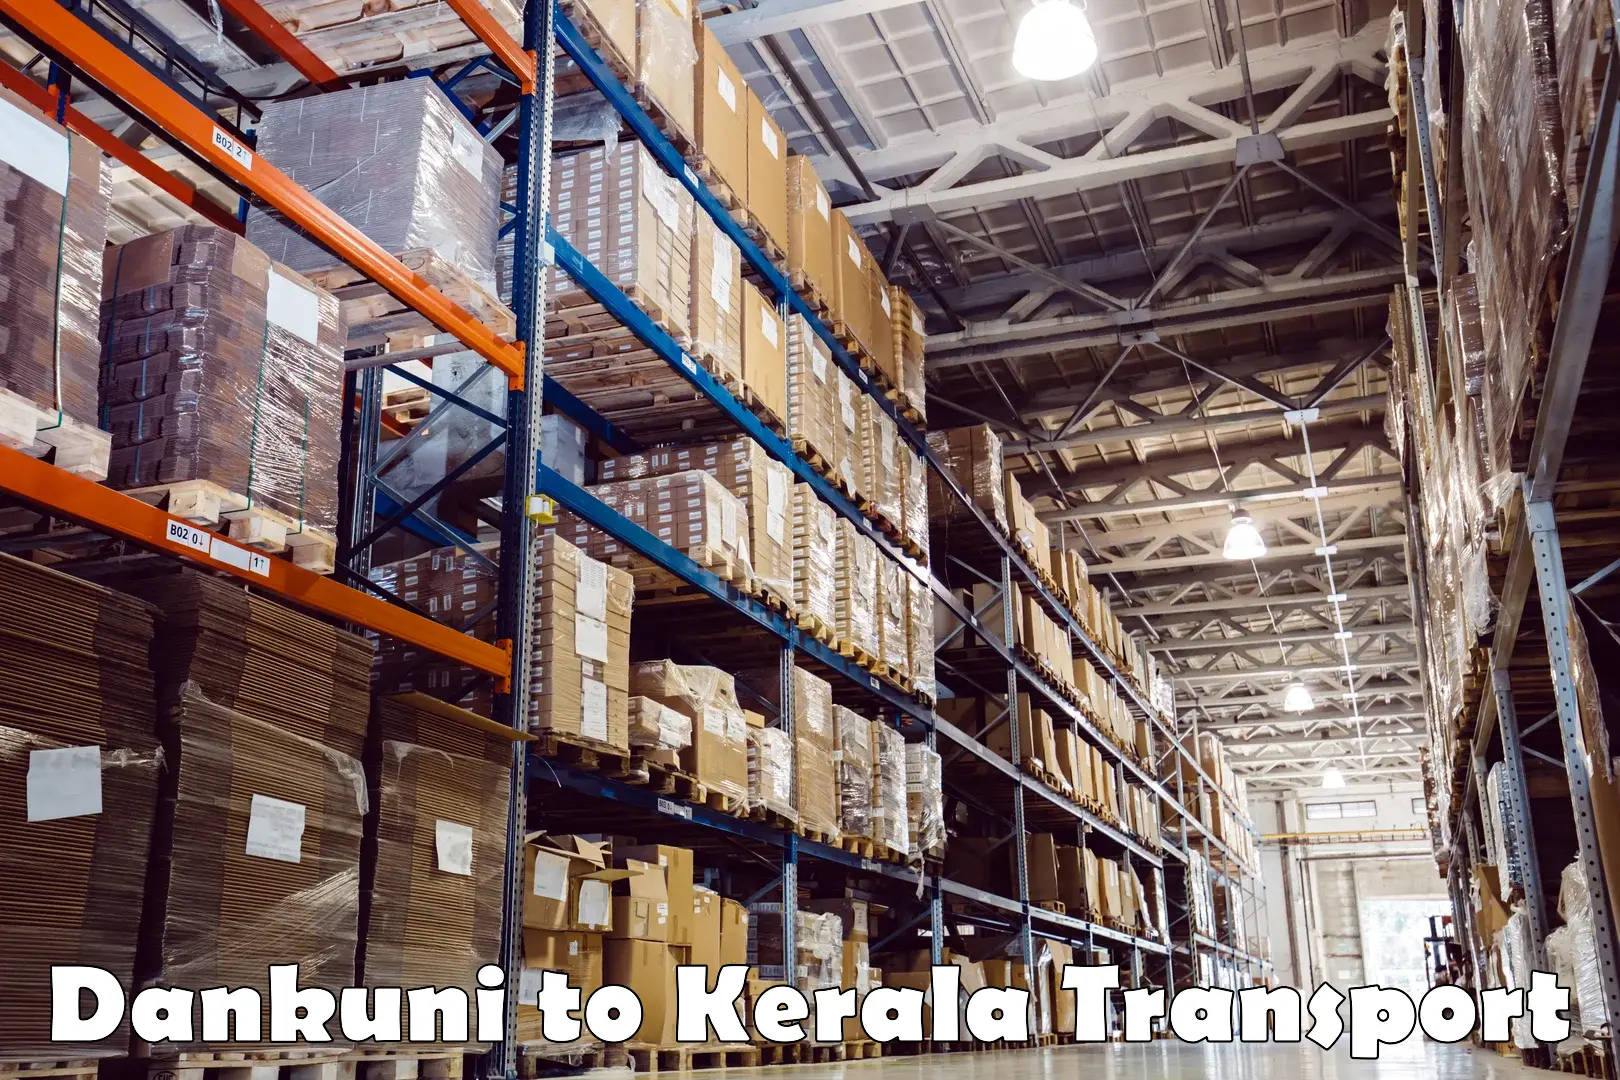 Nearby transport service Dankuni to Kerala